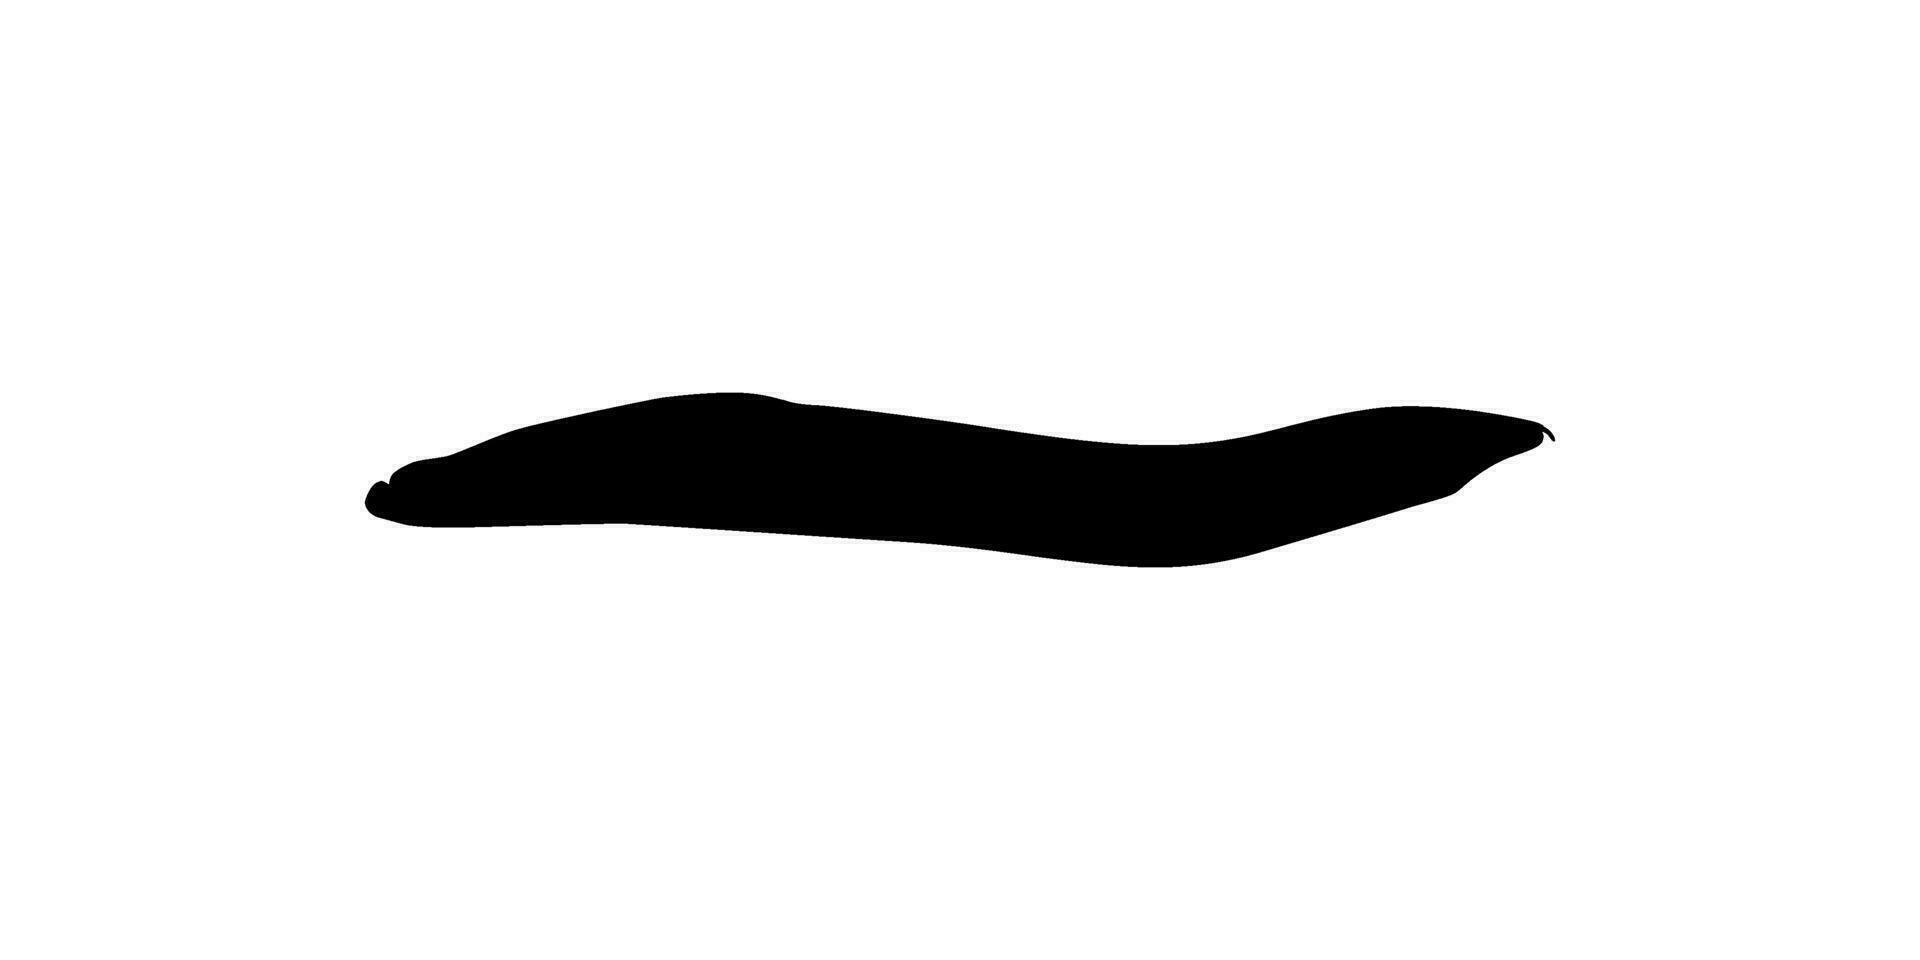 silueta de el fuego Anguila, mastacembelus eritrotenia, es un relativamente grande especies de espinoso Anguila, lata utilizar para Arte ilustración, logo tipo, pictograma, sitio web, o gráfico diseño elemento. vector